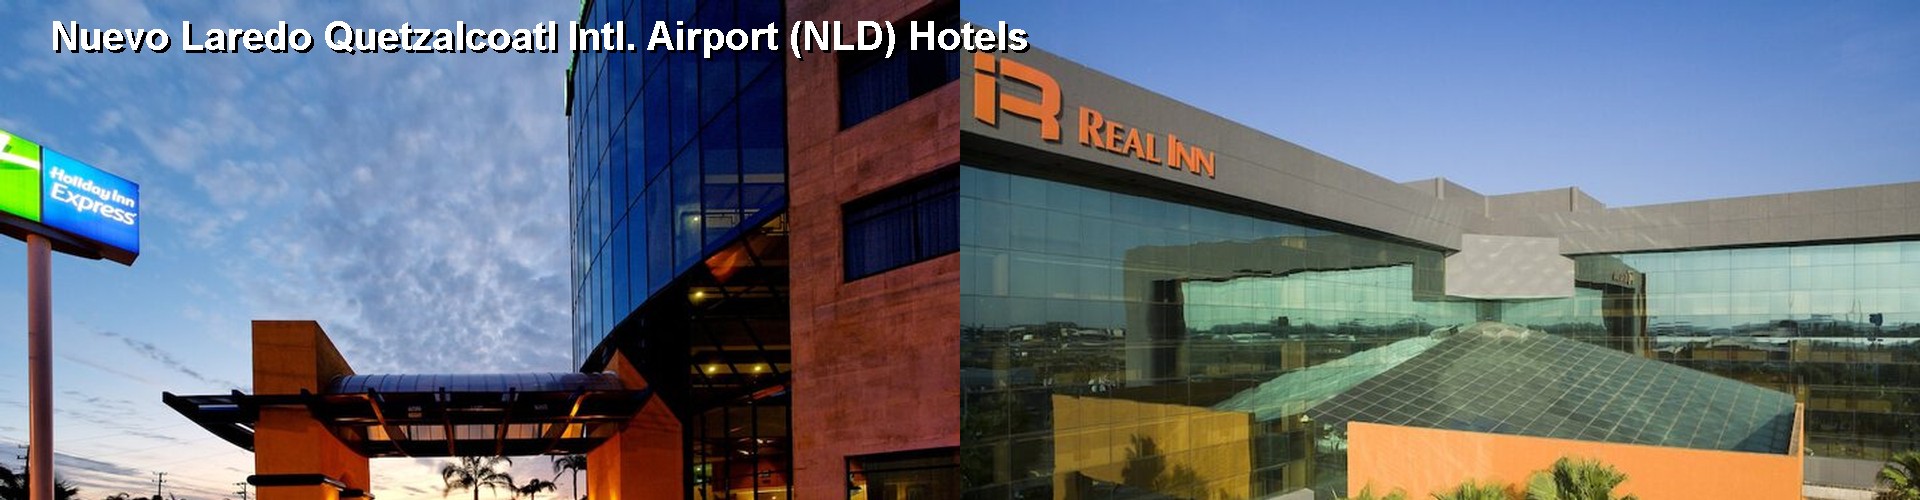 5 Best Hotels near Nuevo Laredo Quetzalcoatl Intl. Airport (NLD)